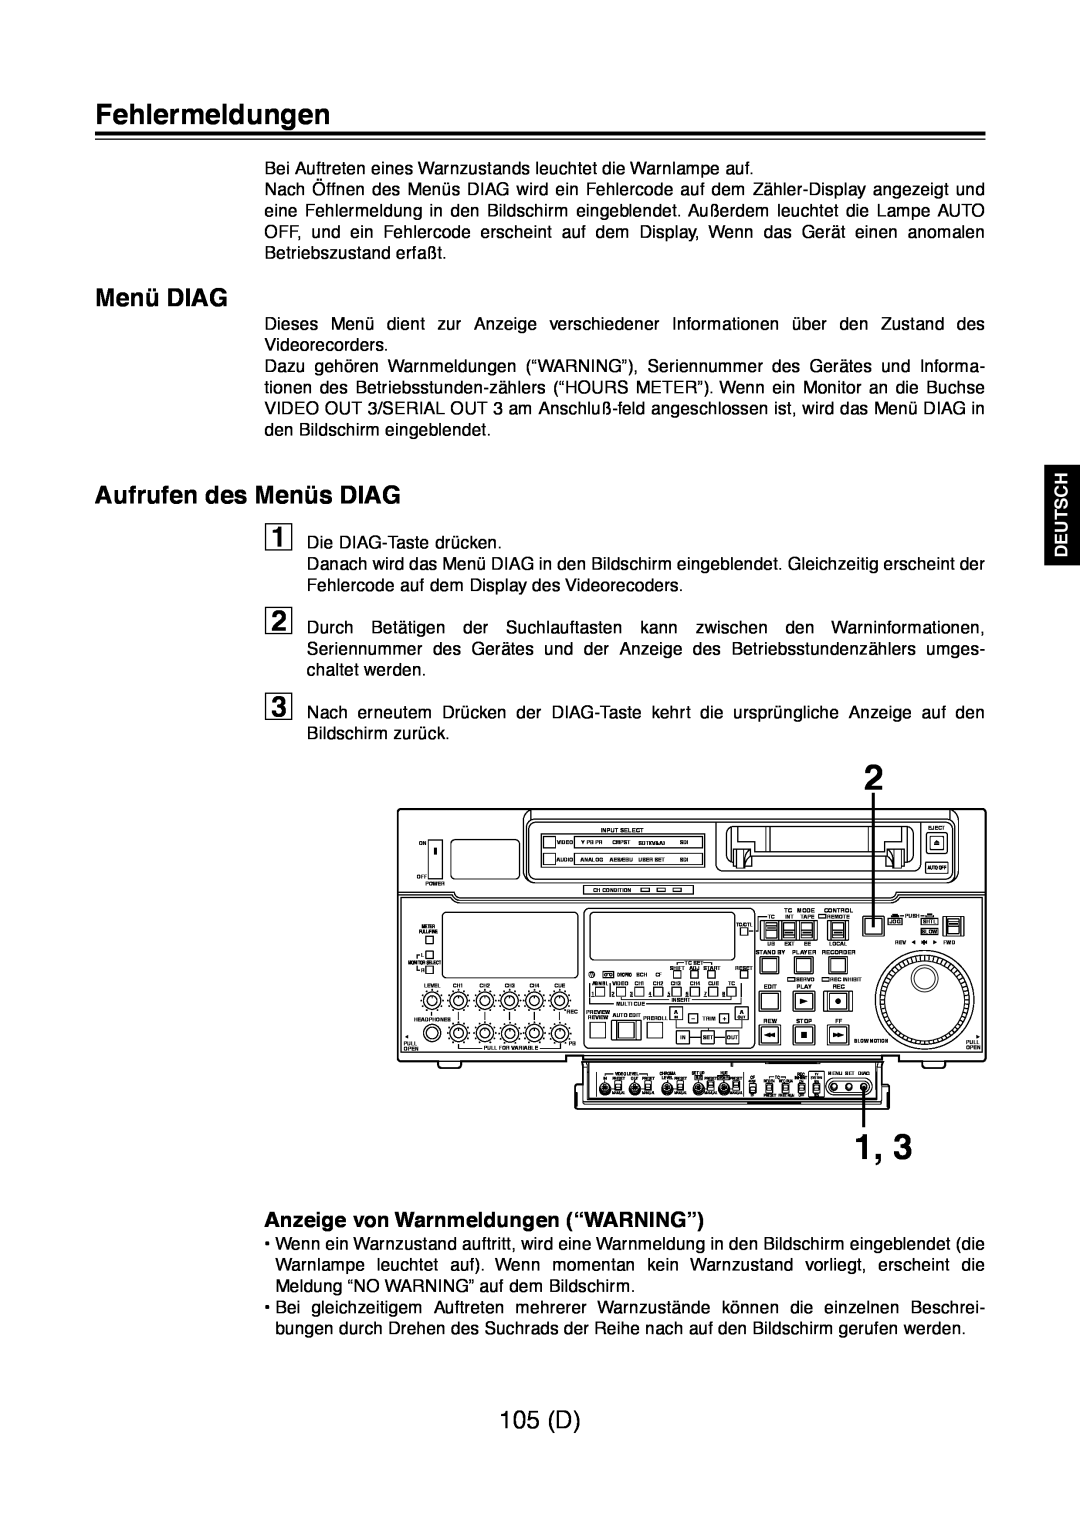 Panasonic AJ-D960 Fehlermeldungen, Menü DIAG, Aufrufen des Menüs DIAG, 105 D, Anzeige von Warnmeldungen “WARNING”, Deutsch 